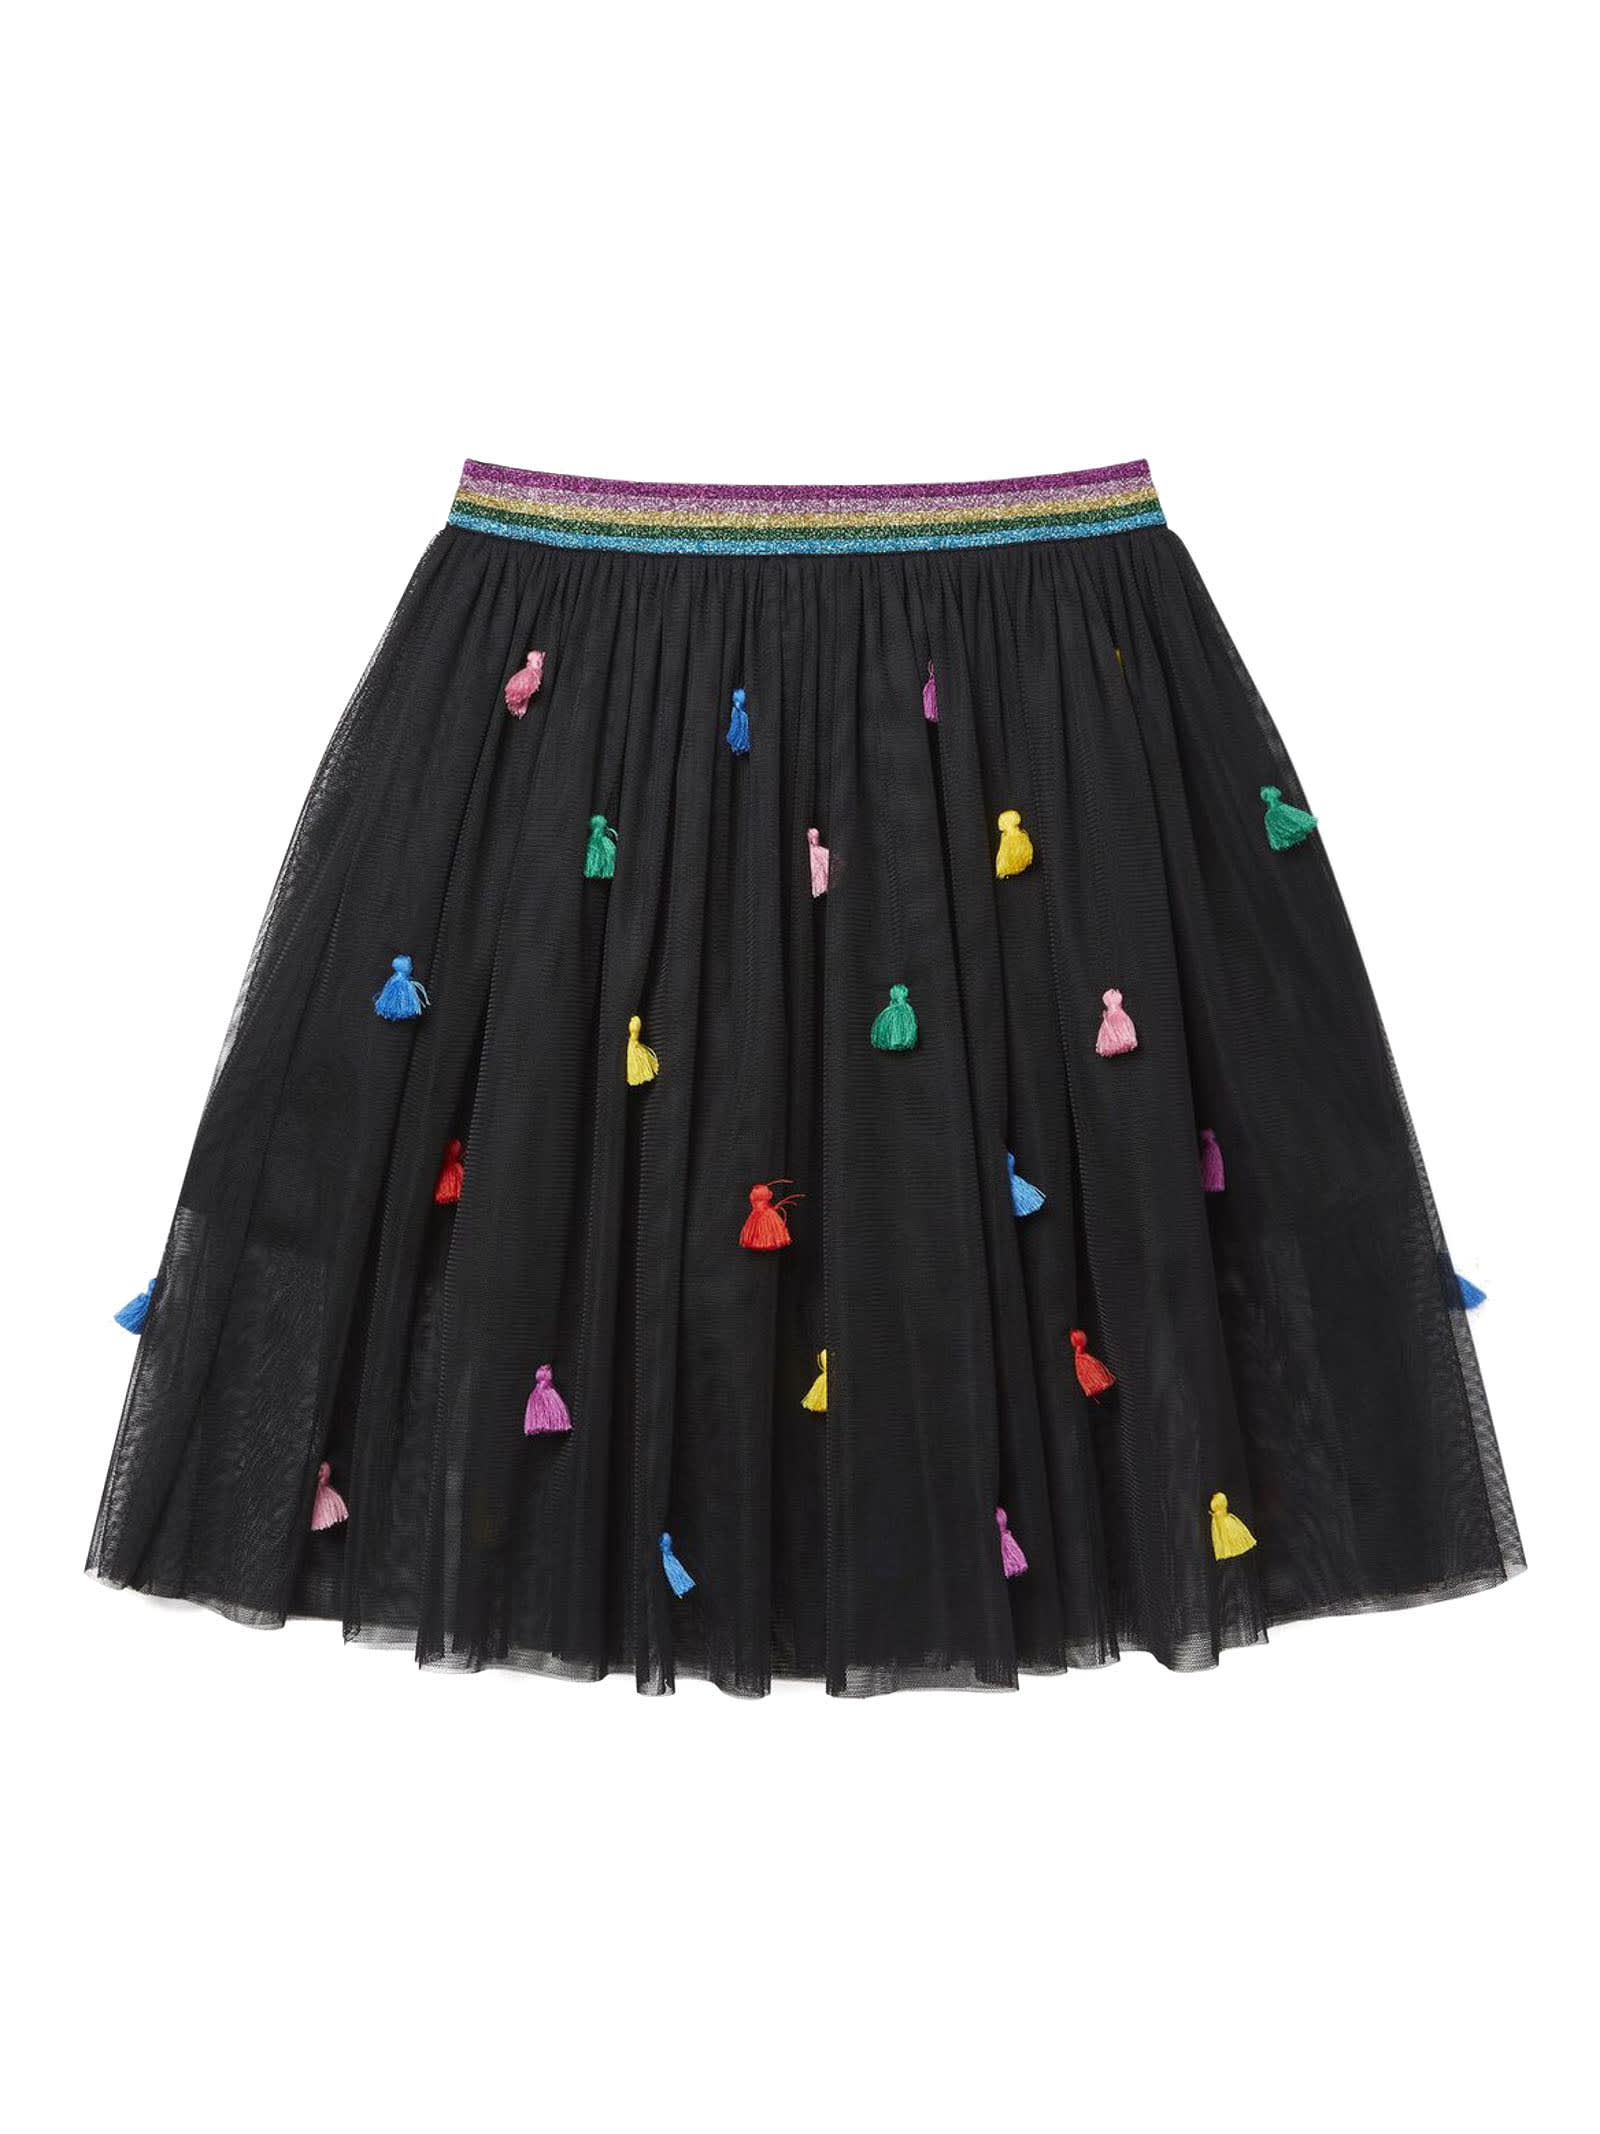 Stella McCartney Kids Tassels Tulle Skirt